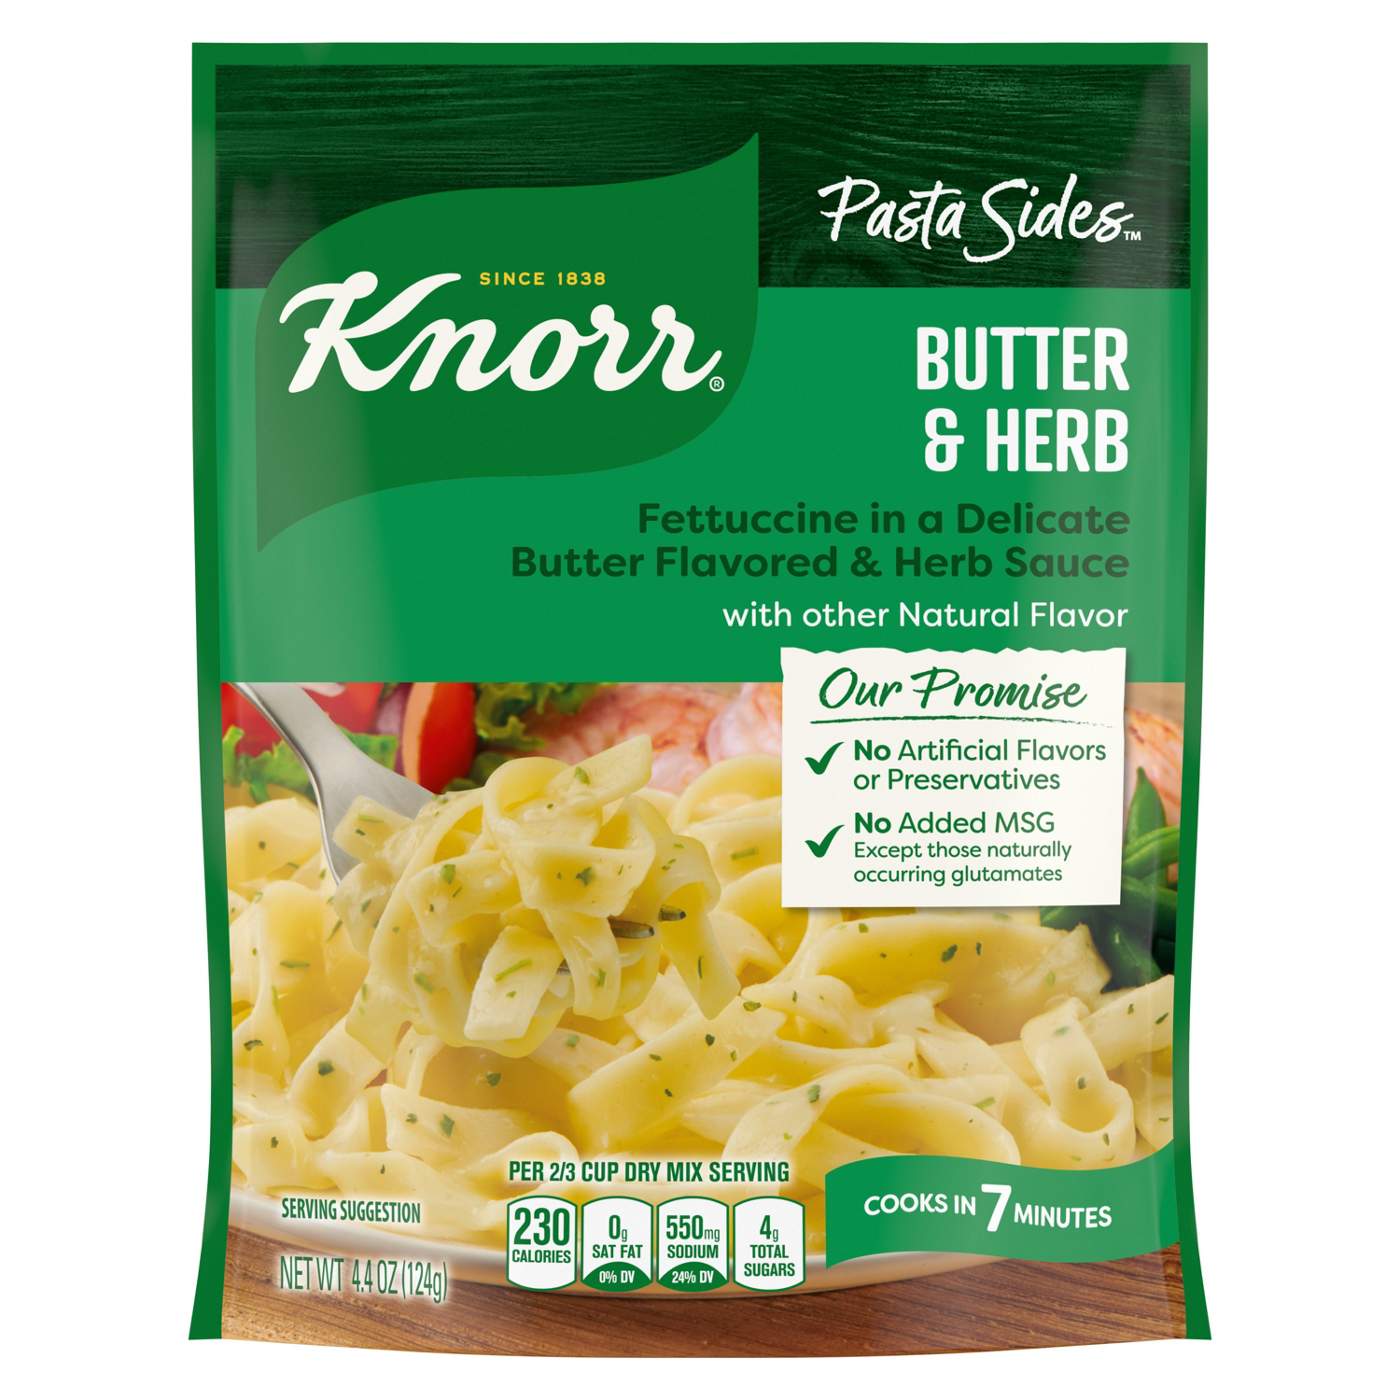 Knorr Pasta Sides Butter & Herb Fettuccine; image 1 of 10